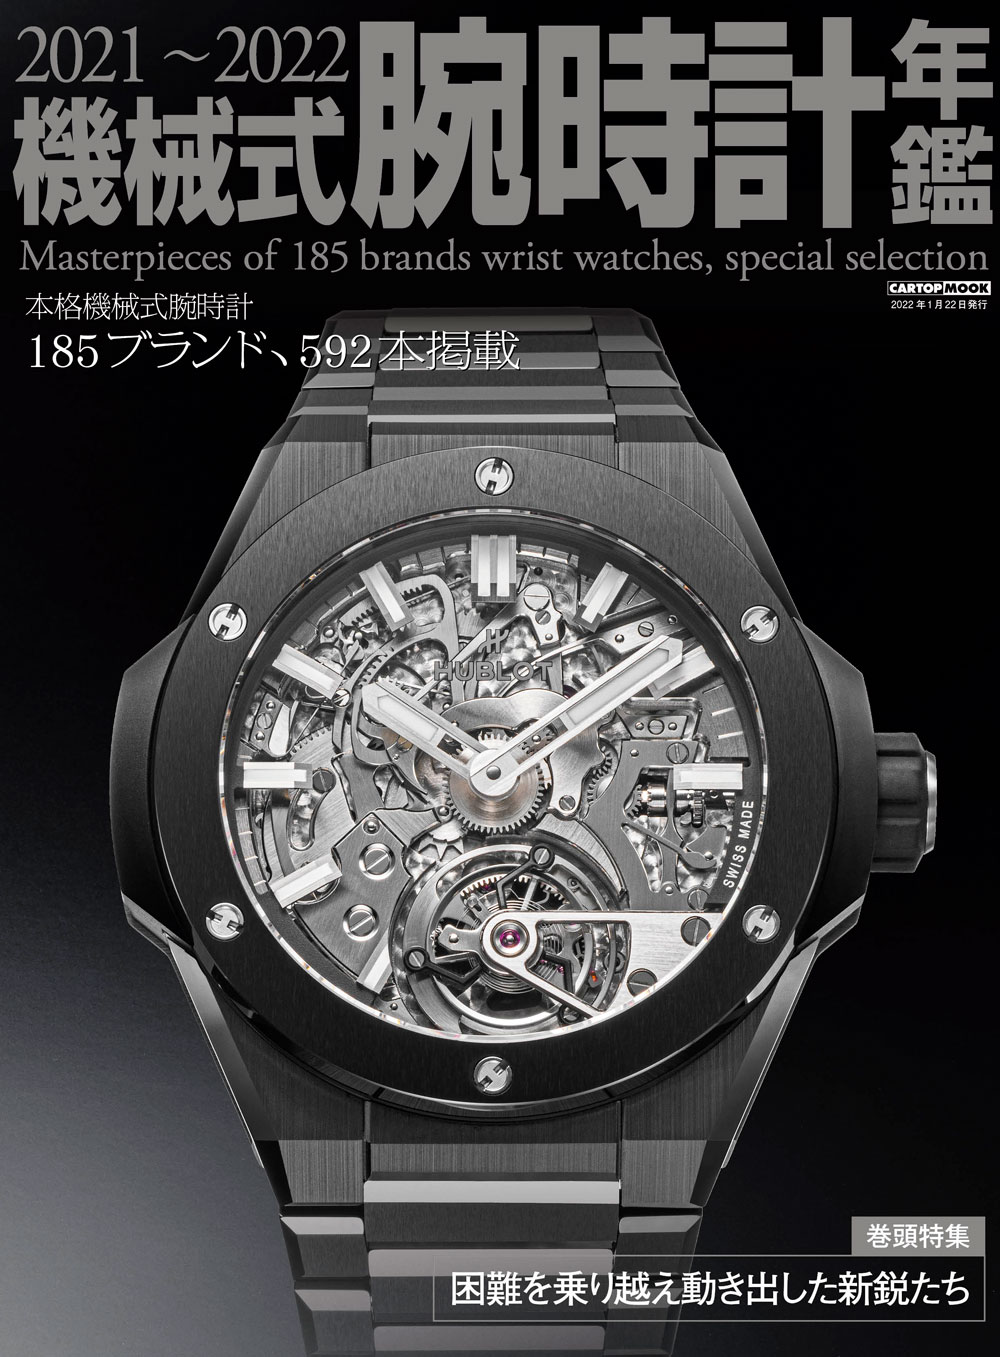 C's-Factory｜書籍｜2021-2022機械式腕時計年鑑